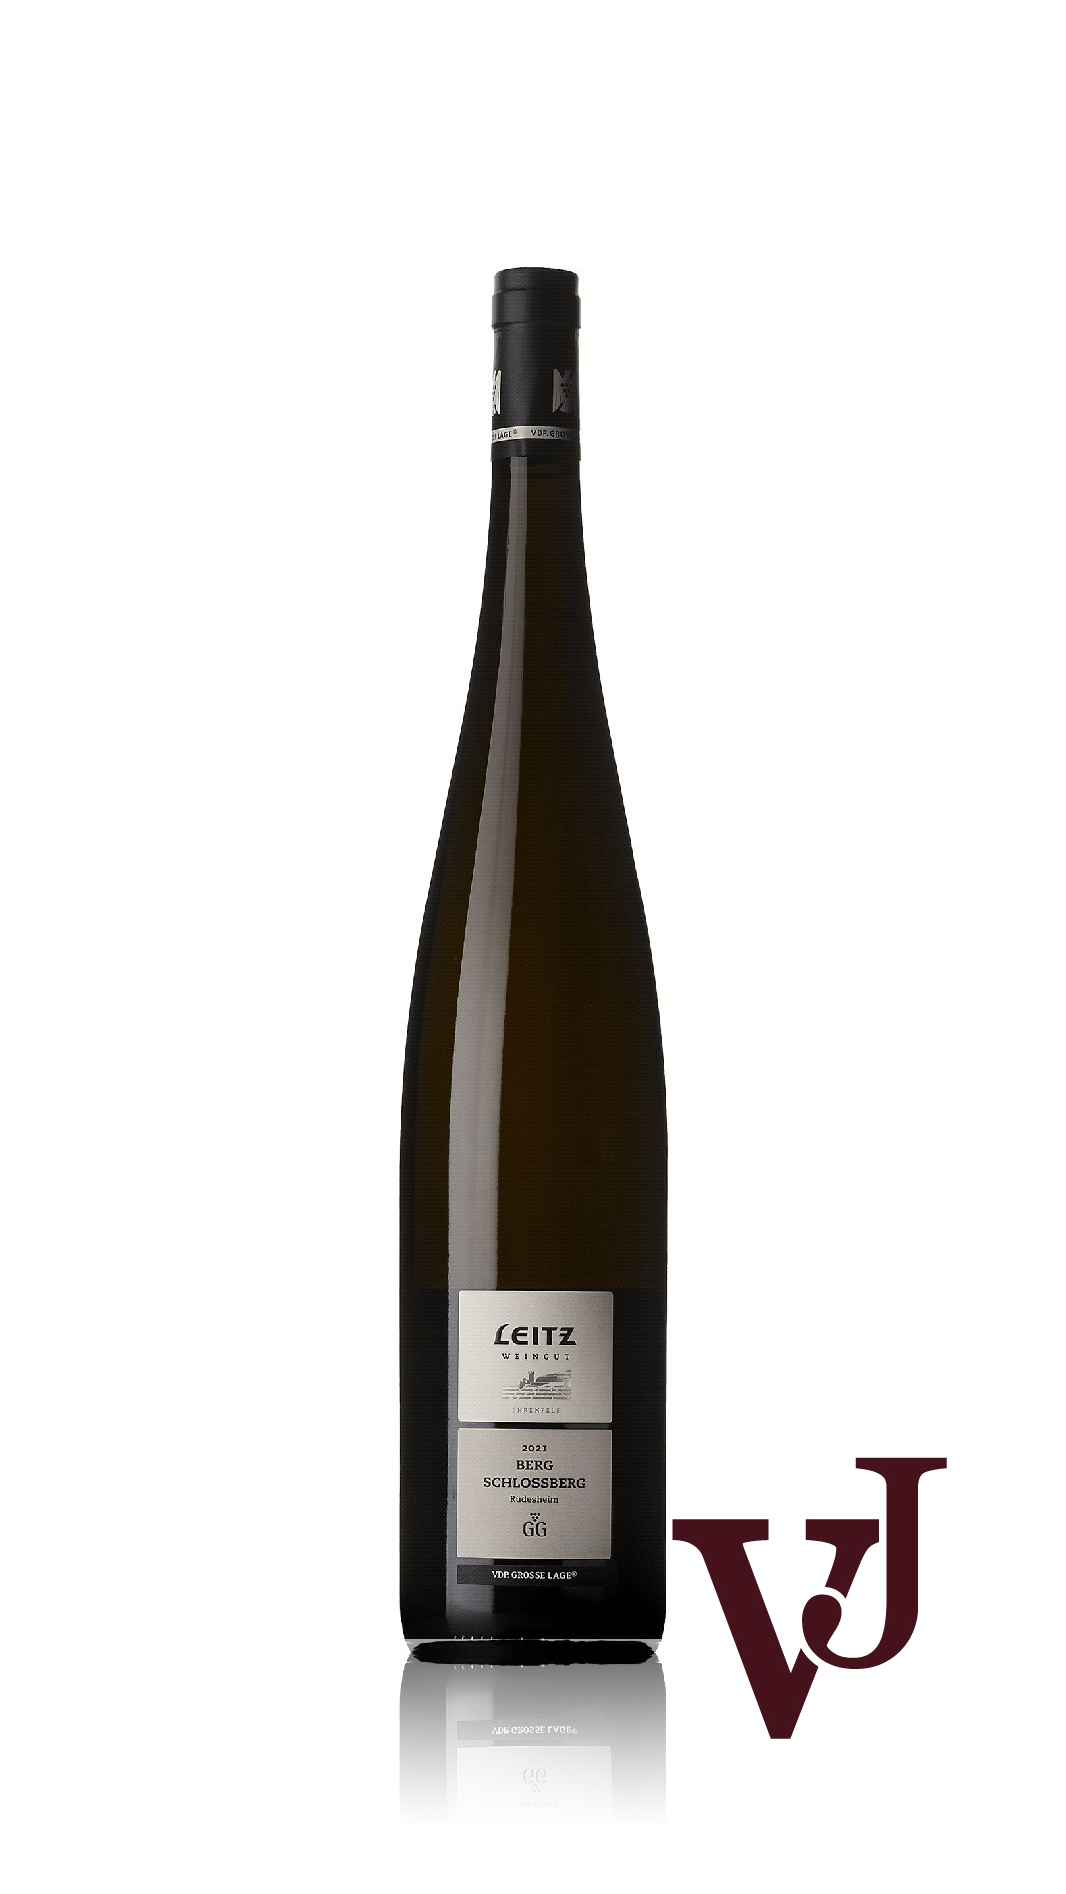 Vitt Vin - Leitz Berg Schlossberg Ehrenfels magnum 2021 artikel nummer 9463506 från producenten Weingut Leitz från området Tyskland